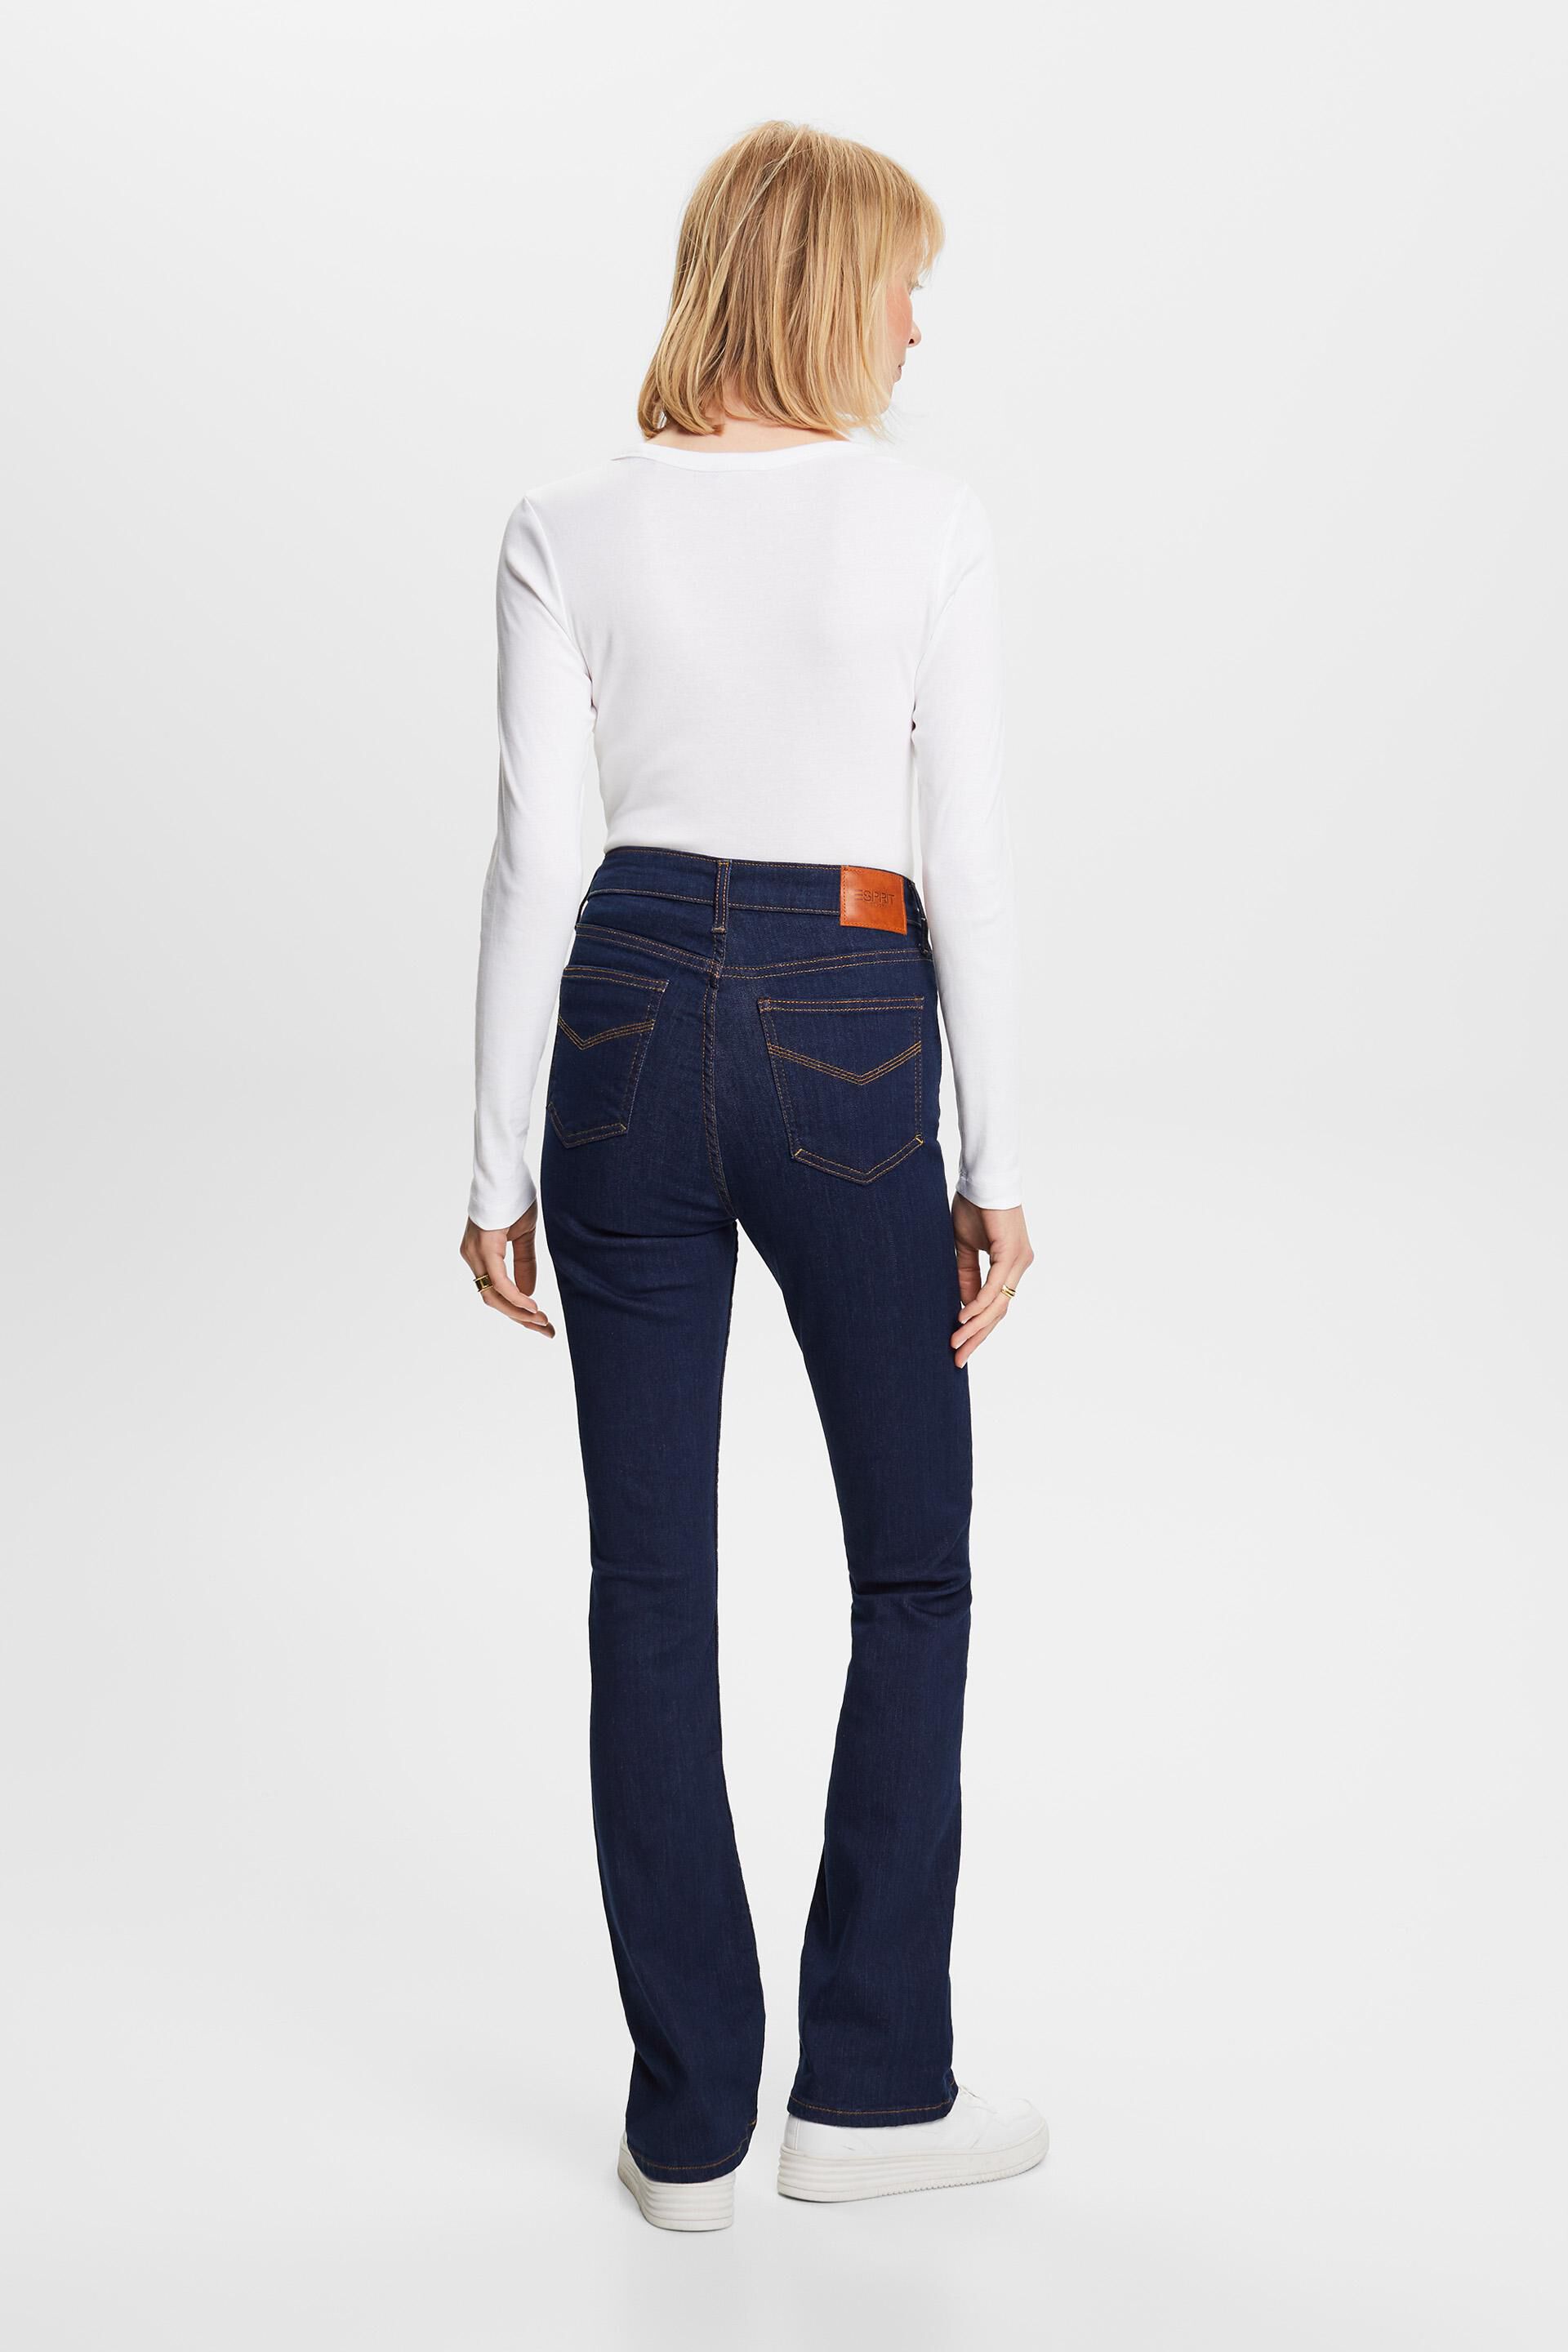 Esprit Damen Hochwertige Bootcut-Jeans mit Bund hohem